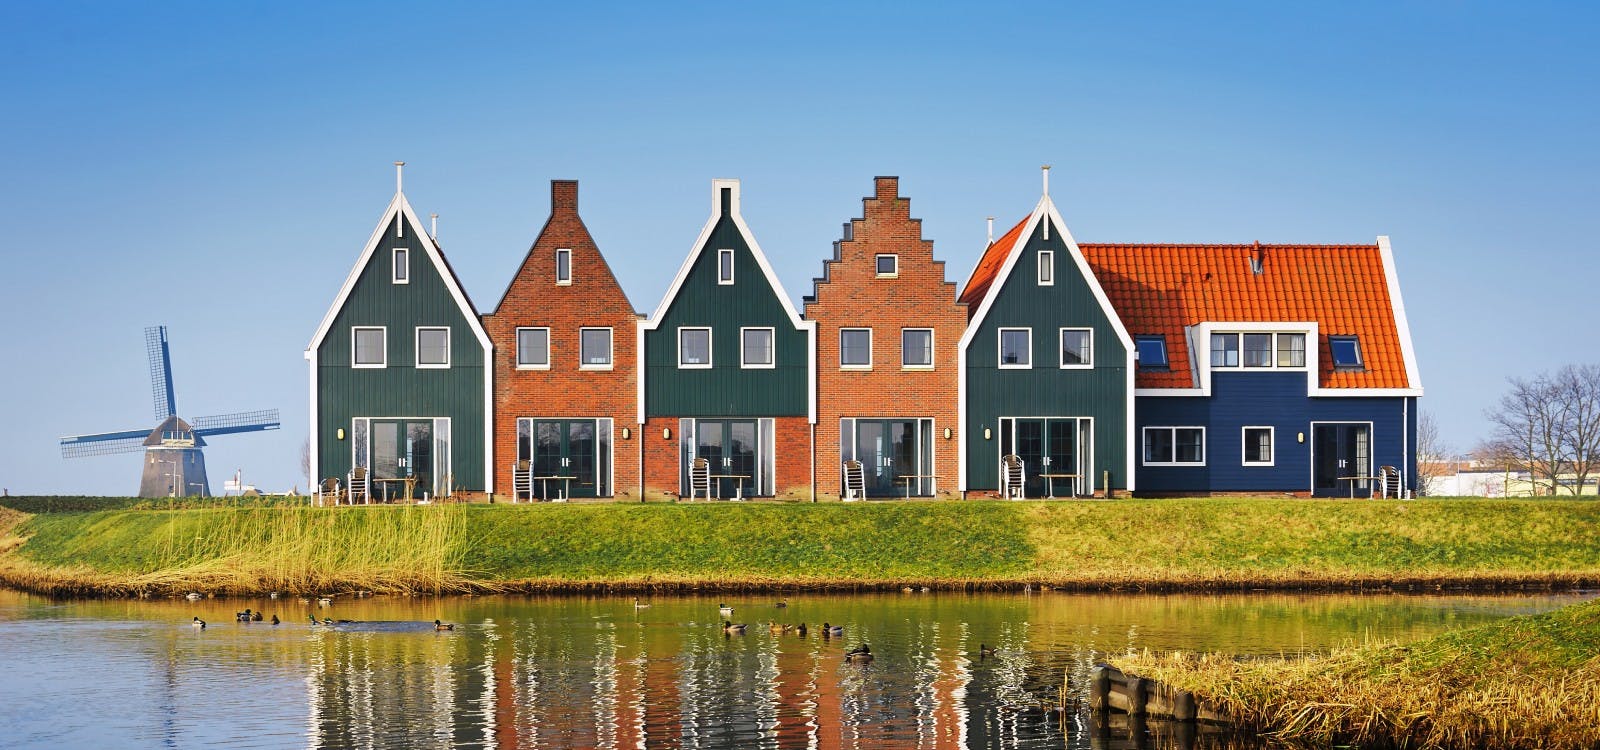 leuk gekleurde huisjes met een molen op de achtergrond